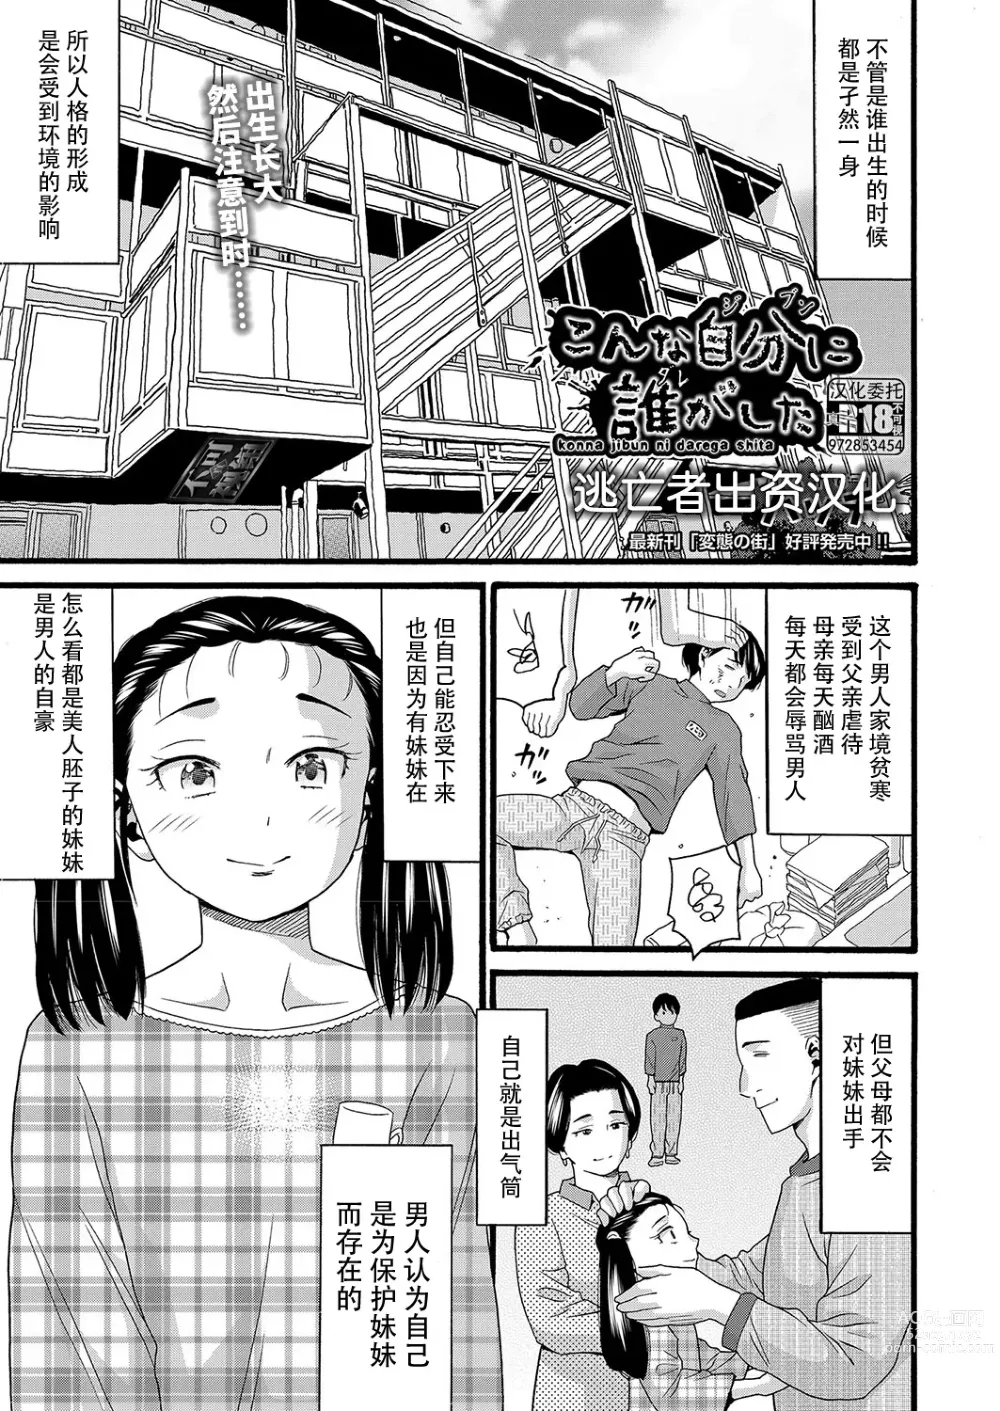 Page 1 of manga Konna Jibun ni Dare ga Shita